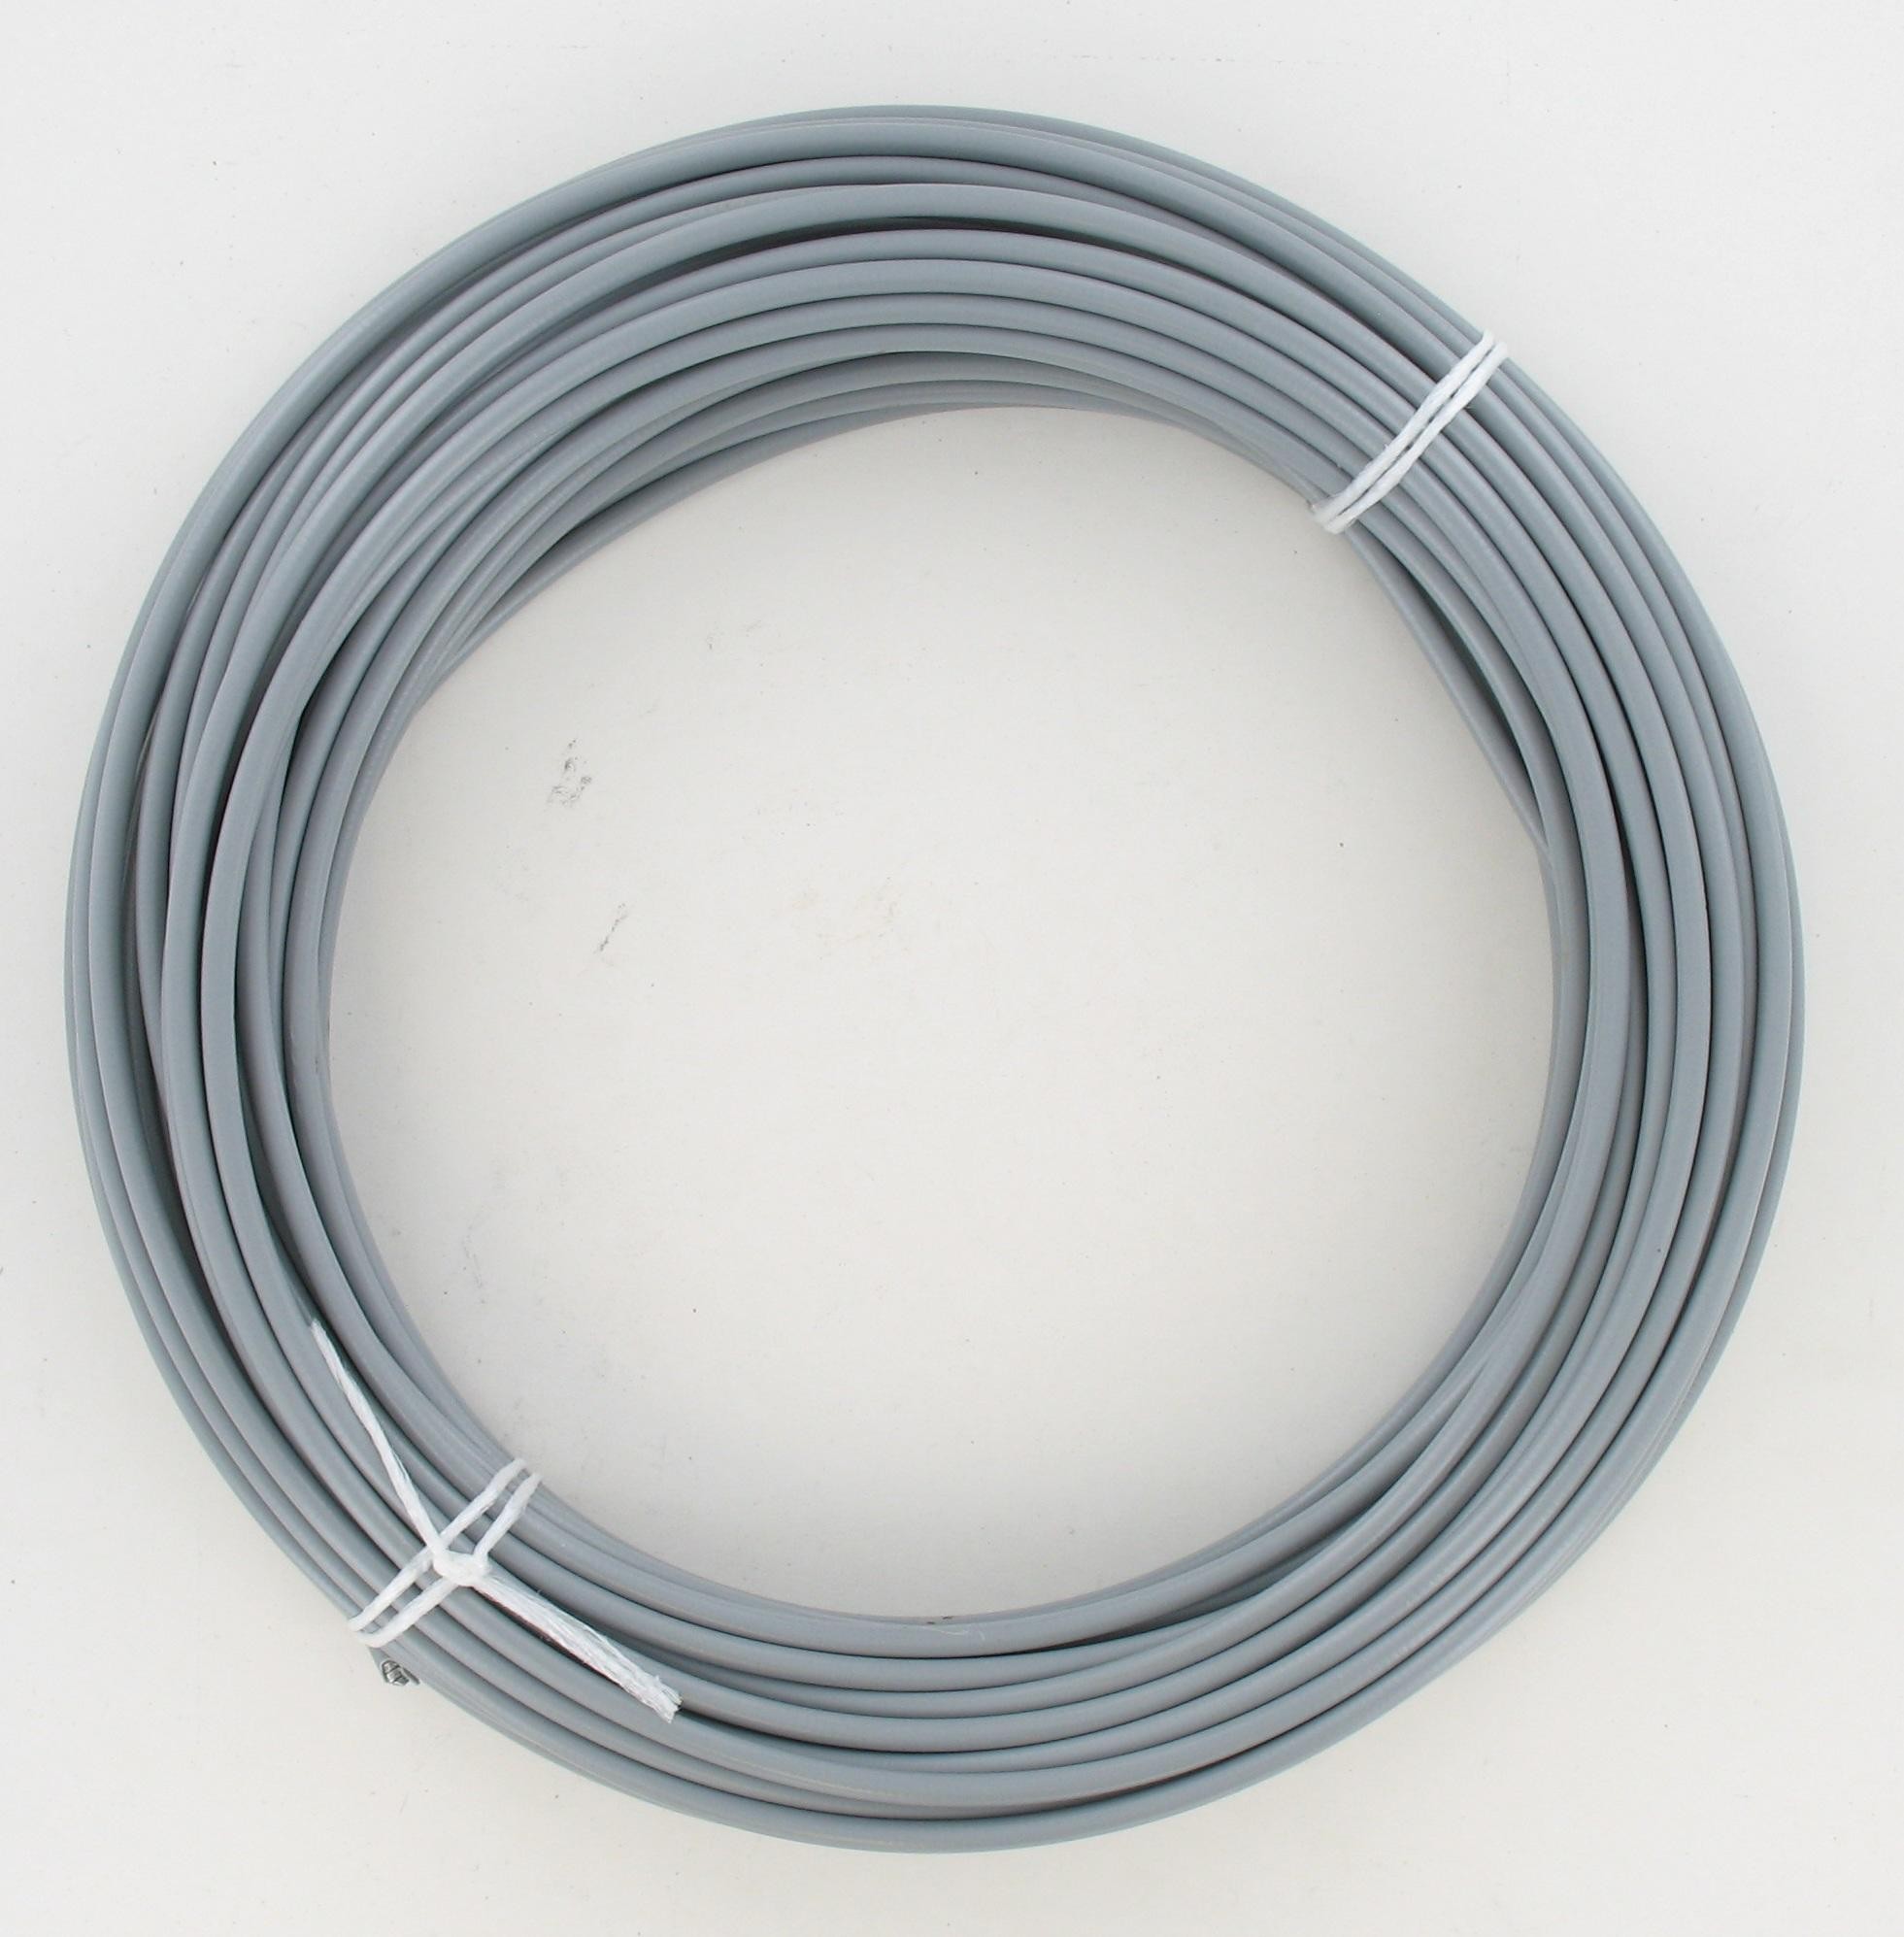 Gaine plastifiée pour câble. Ø int : 2 mm. Ø ext : 5 mm. Rouleau de 25 m